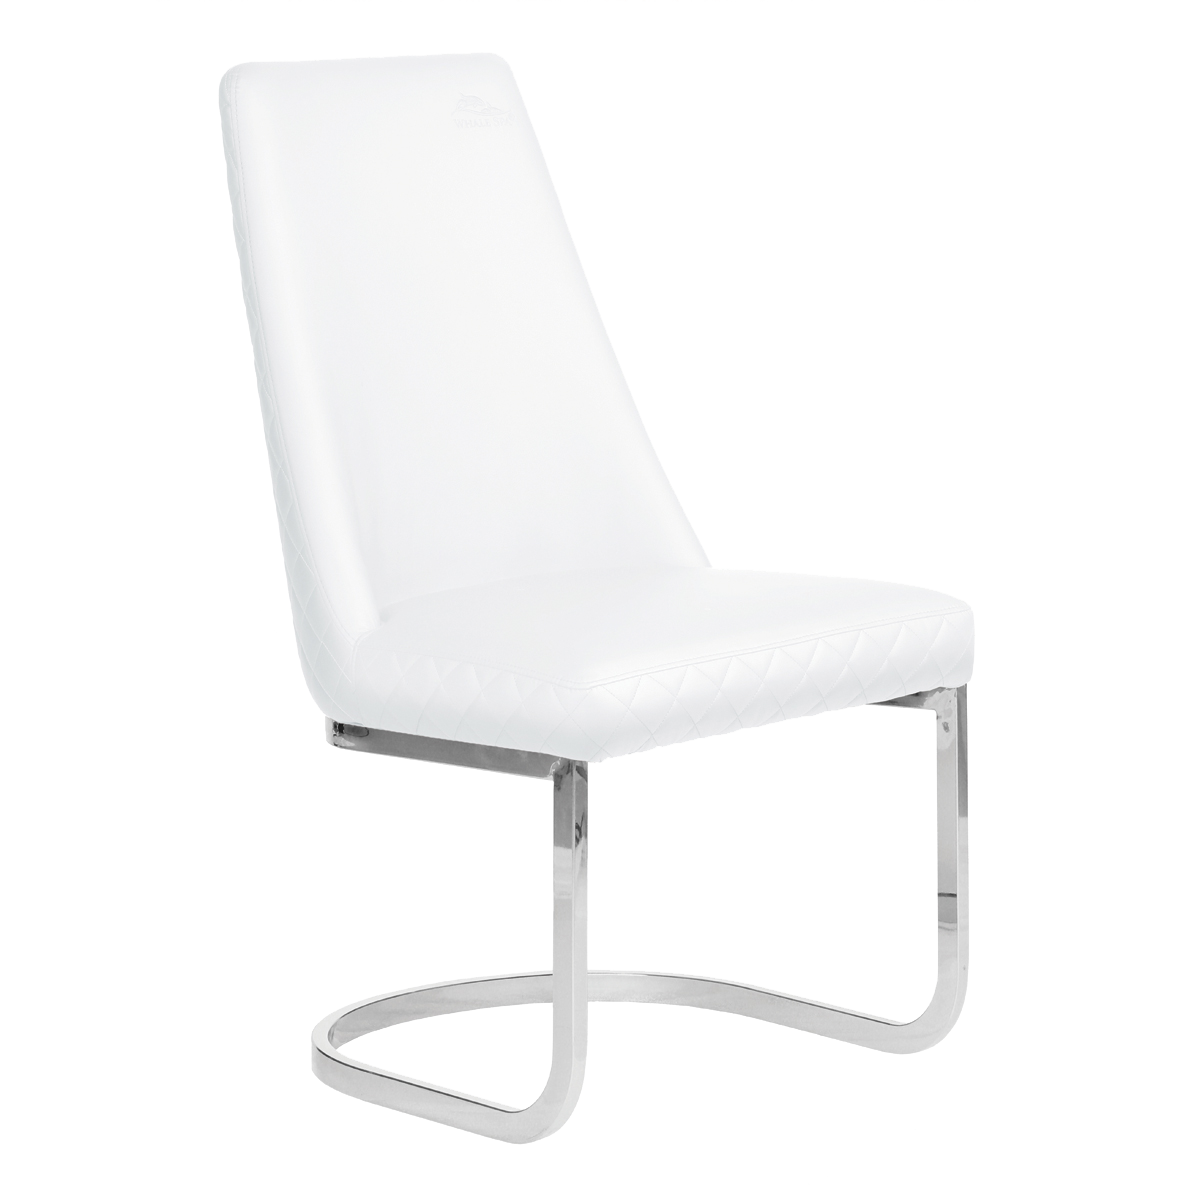 Whale Spa White Customer Chair Diamond 8109 Nail Salon Customer Chair | Salon and Spa Furniture